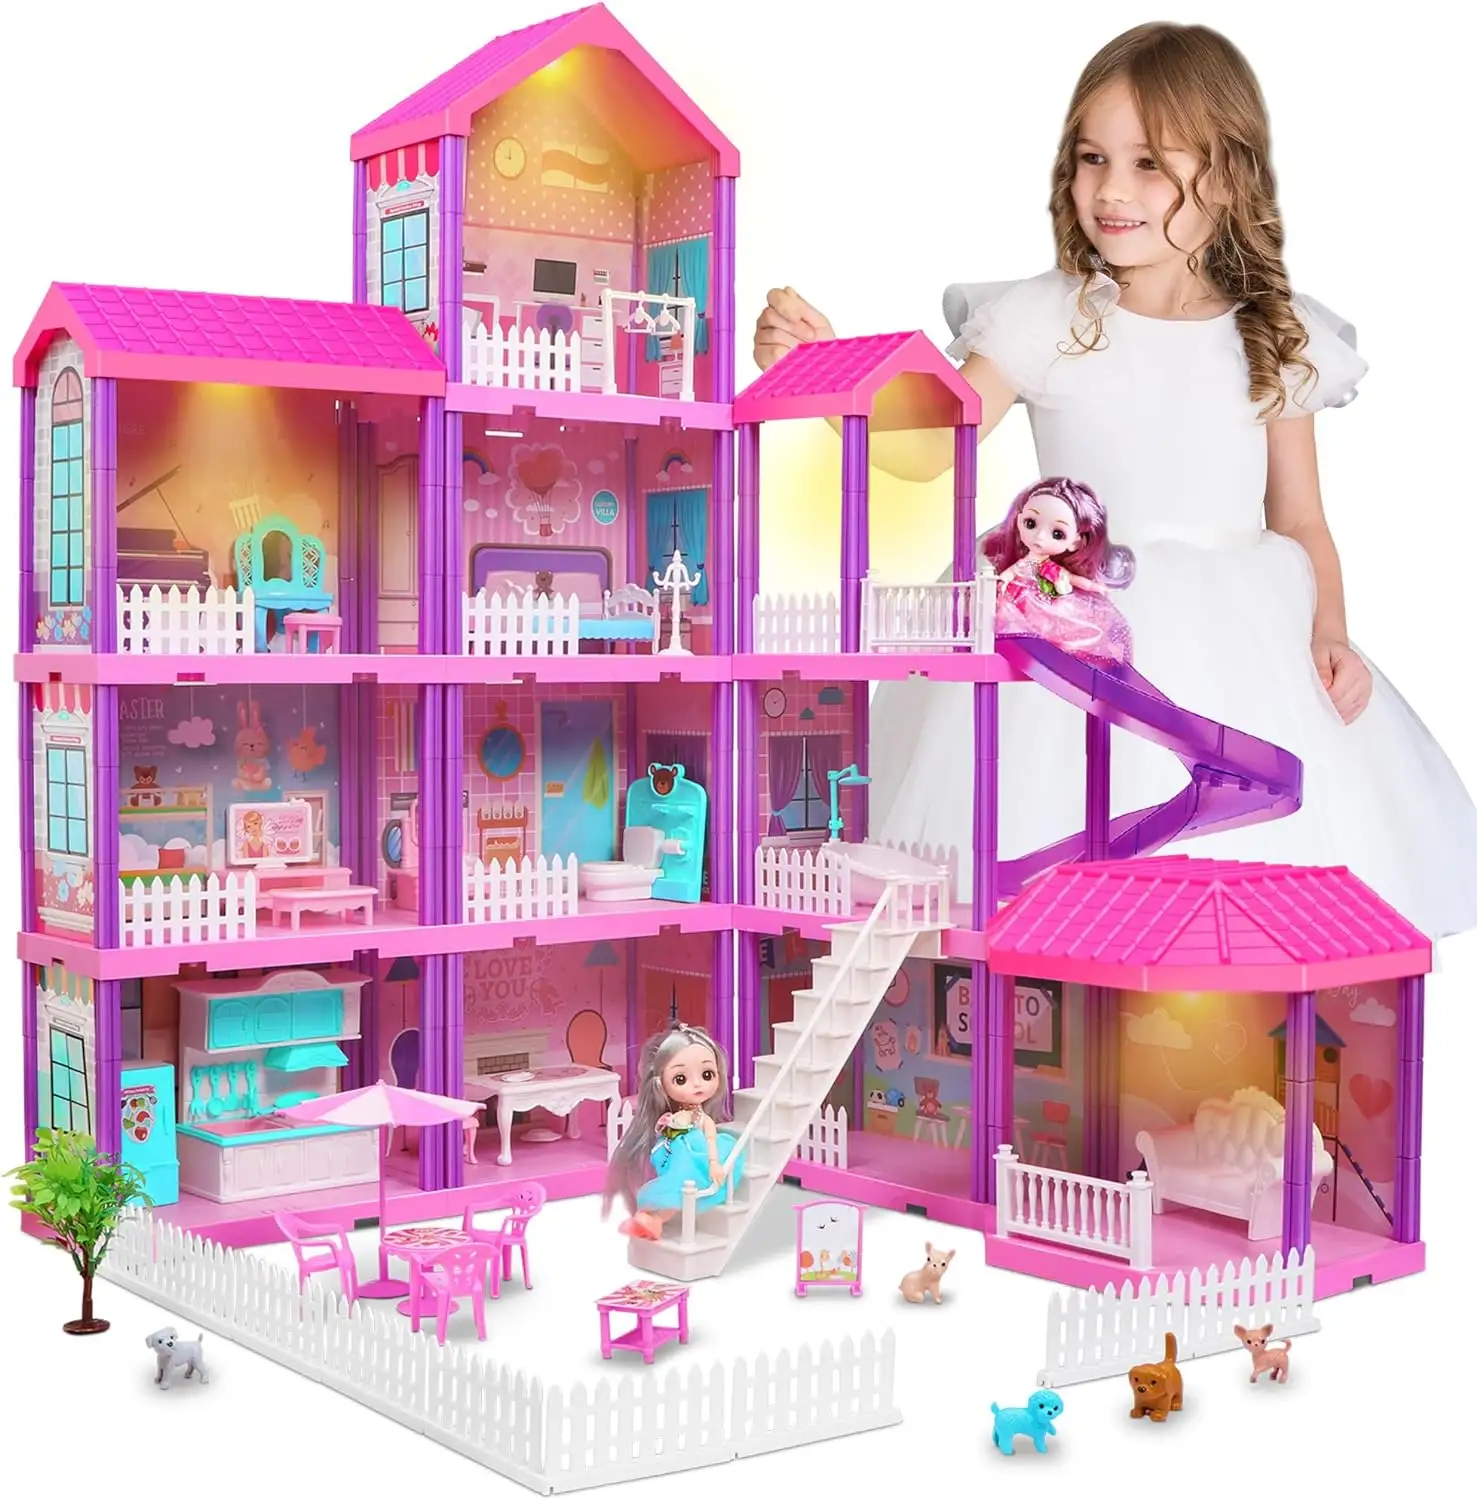 नाटक की लड़की राजकुमारी खिलौना सामान फर्नीचर डिय असेंबली प्लास्टिक बड़े आकार का सपना लड़के और लड़की गुड़िया के साथ गुलाबी गुड़िया घर